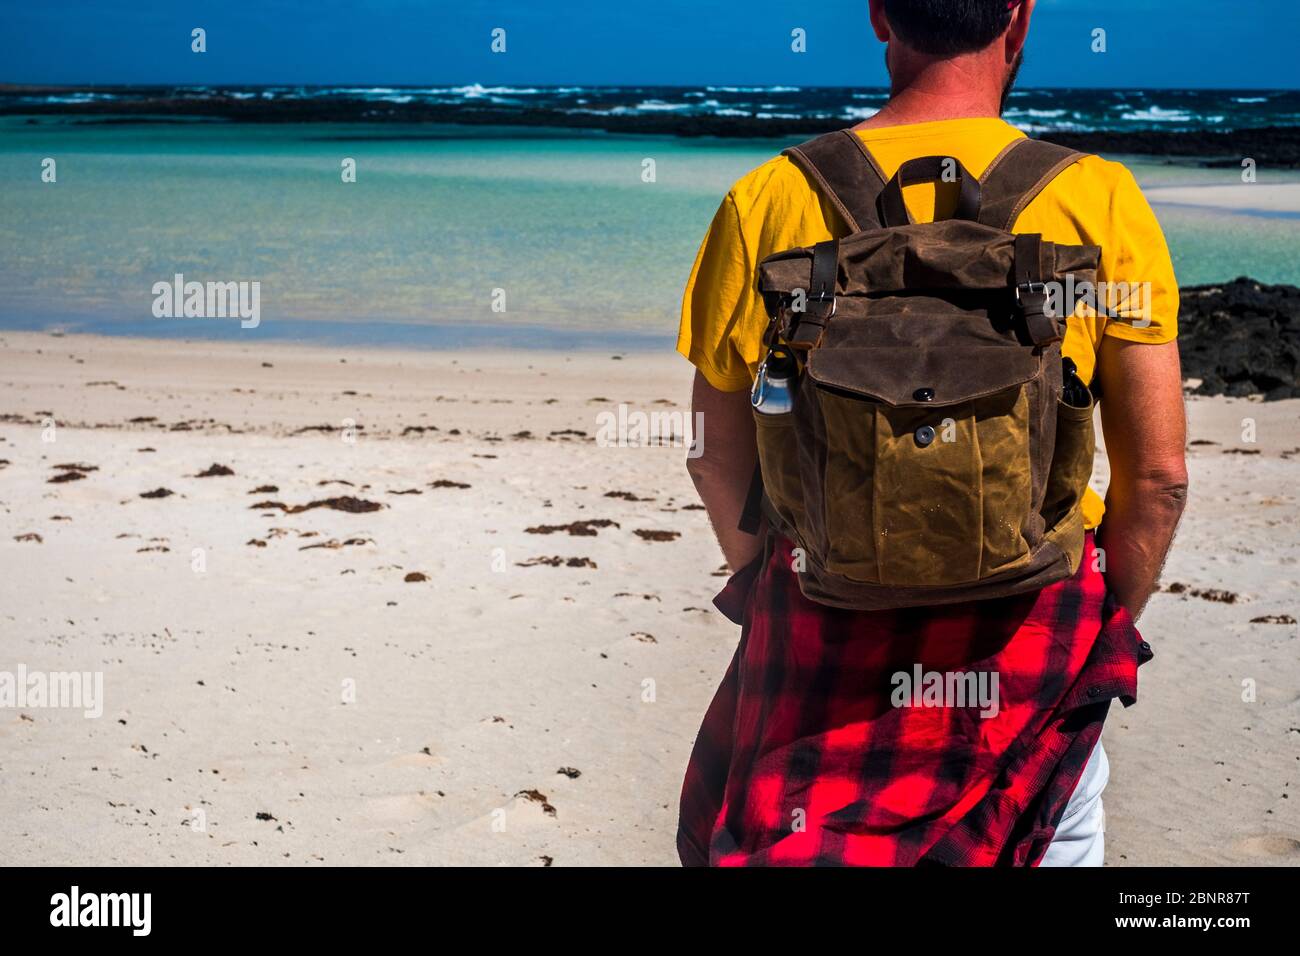 Vacaciones de verano gente viaje mochila concepto con el hombre parado y  mirando el agua azul del mar de la playa - arena blanca amarilla y  actividad al aire libre Fotografía de